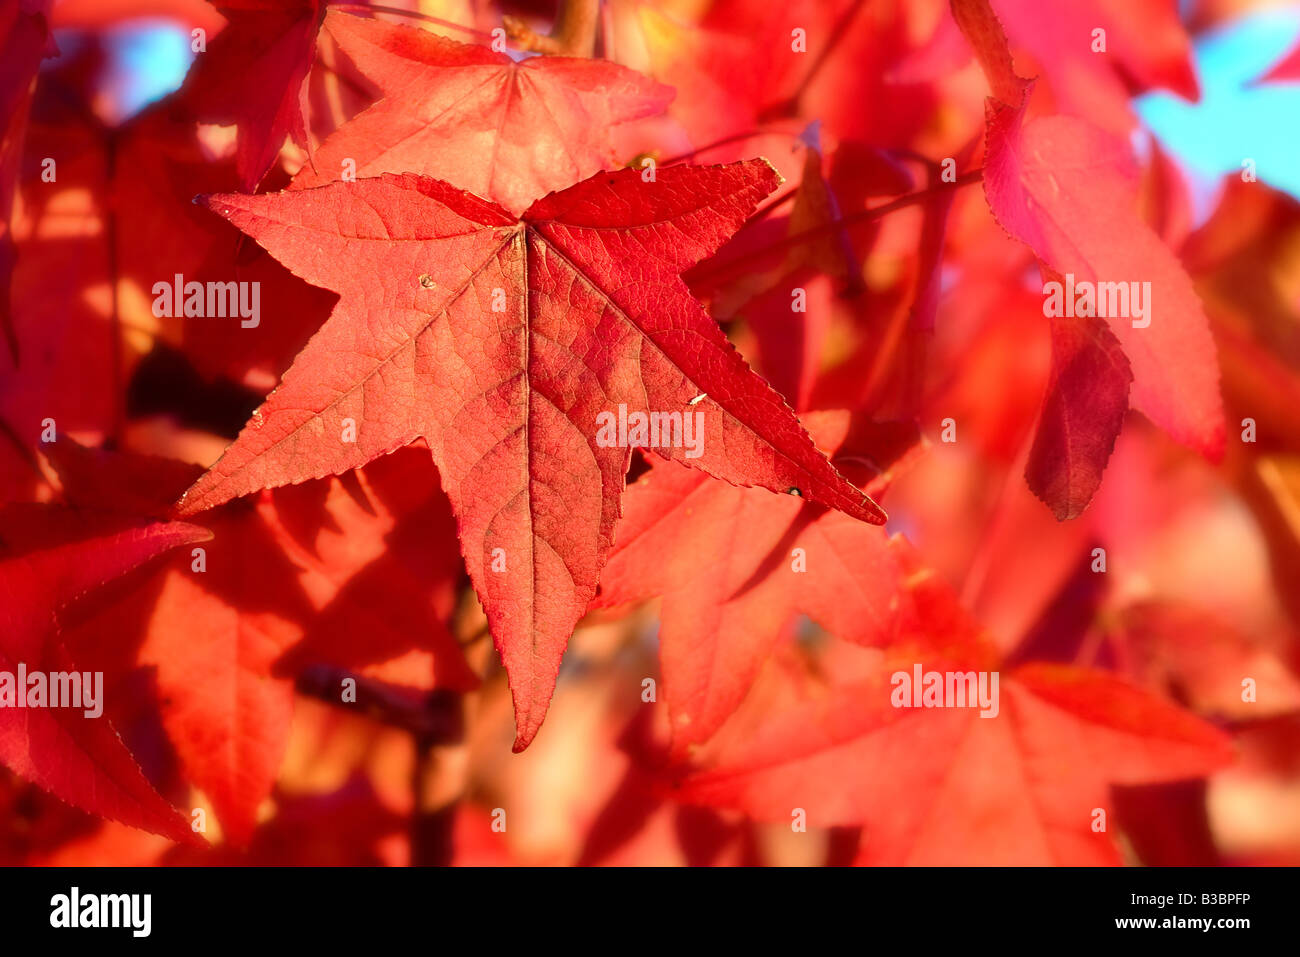 Gran imagen de hojas rojizas Foto de stock